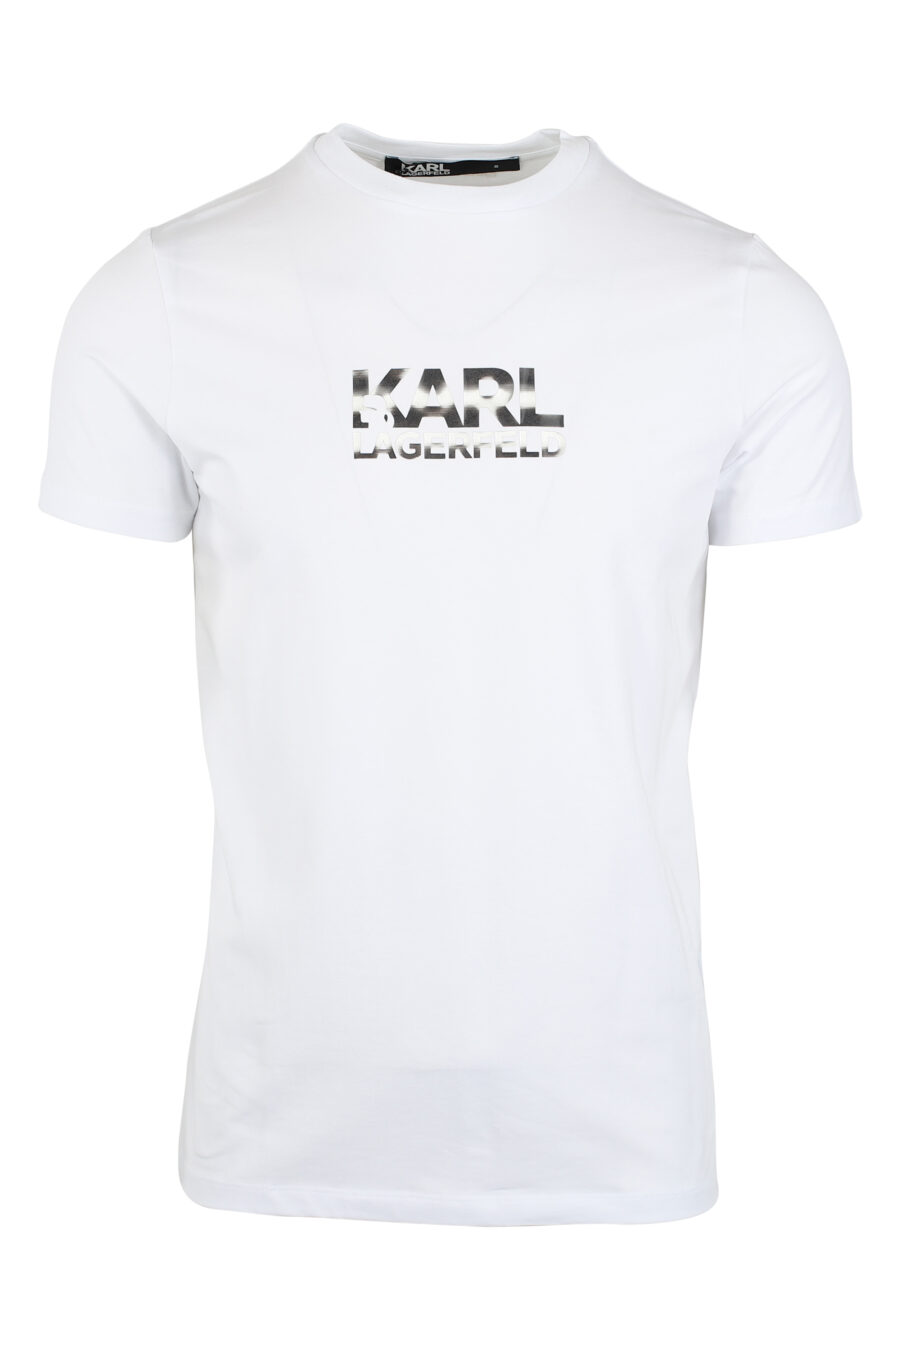 Weißes T-Shirt mit Hologramm-Effekt-Logo - IMG 9485